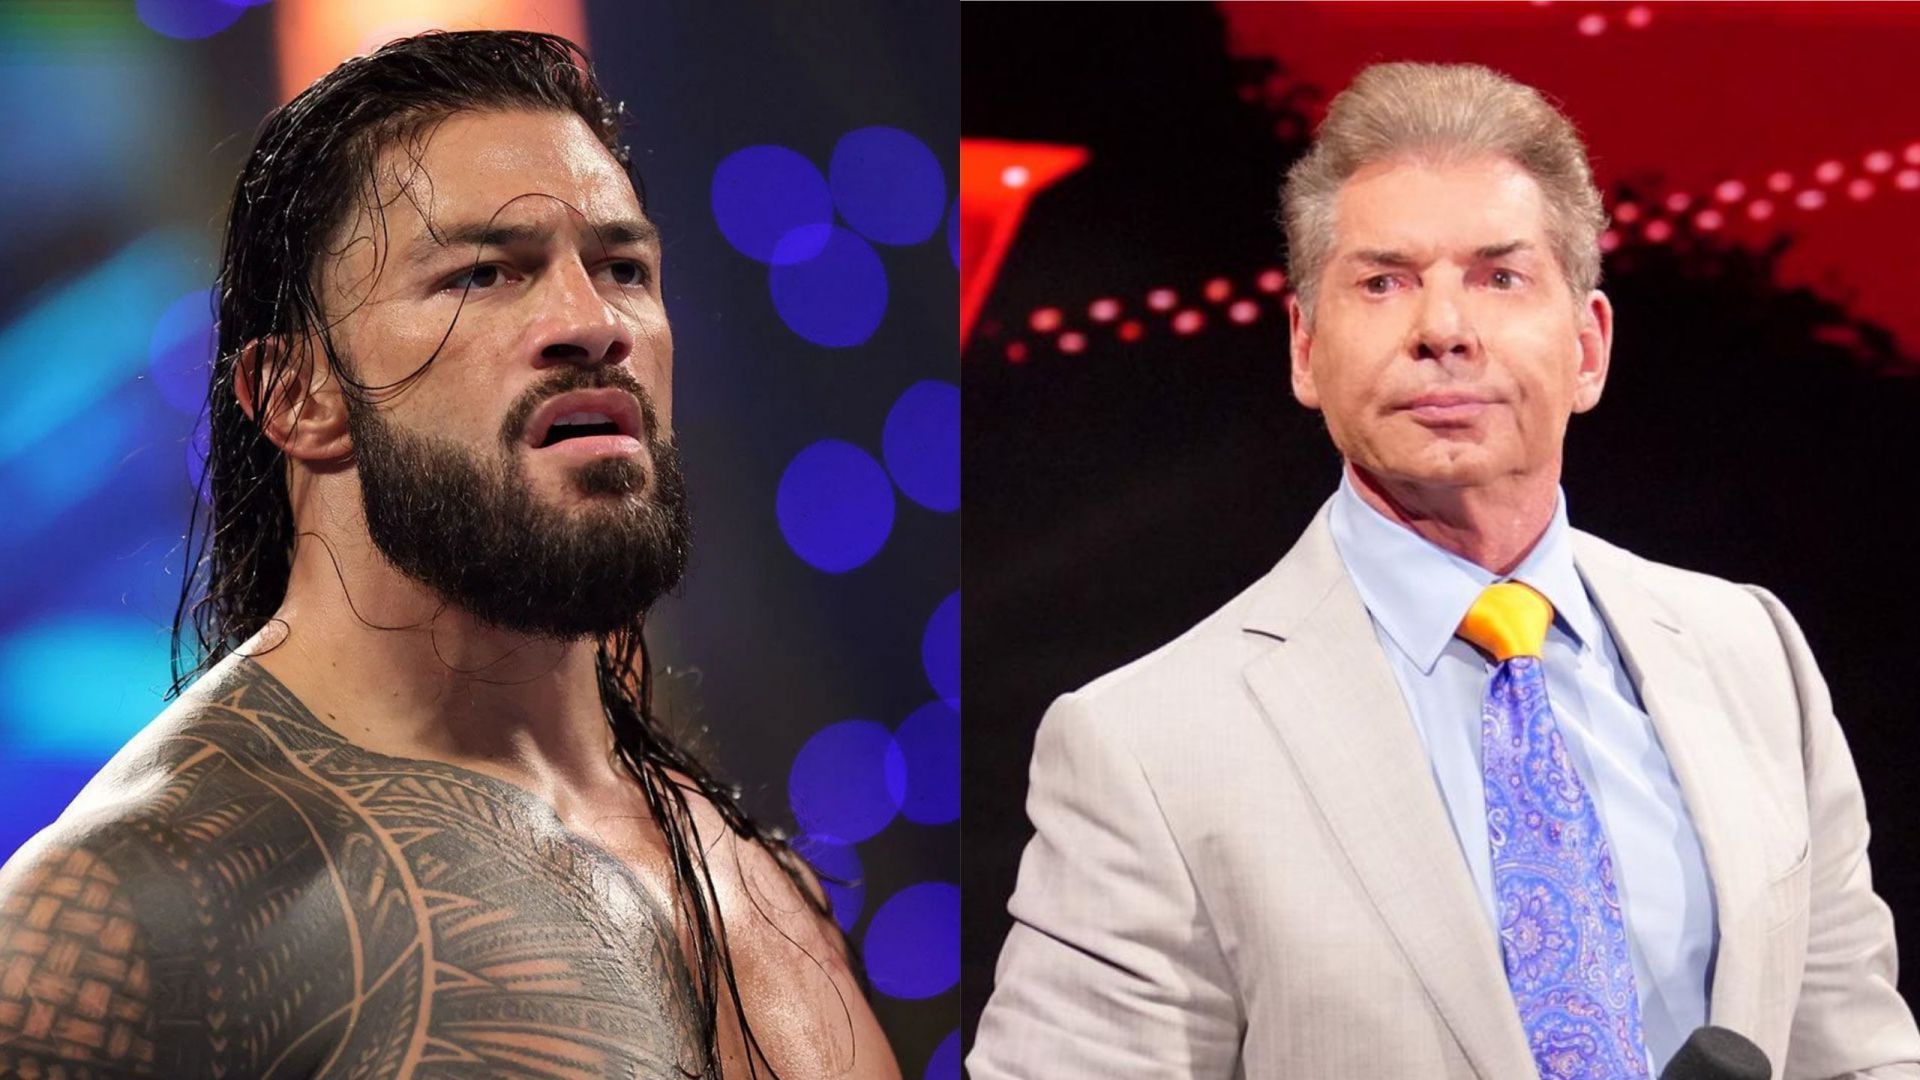 Roman Reigns (left); Vince McMahon (right)